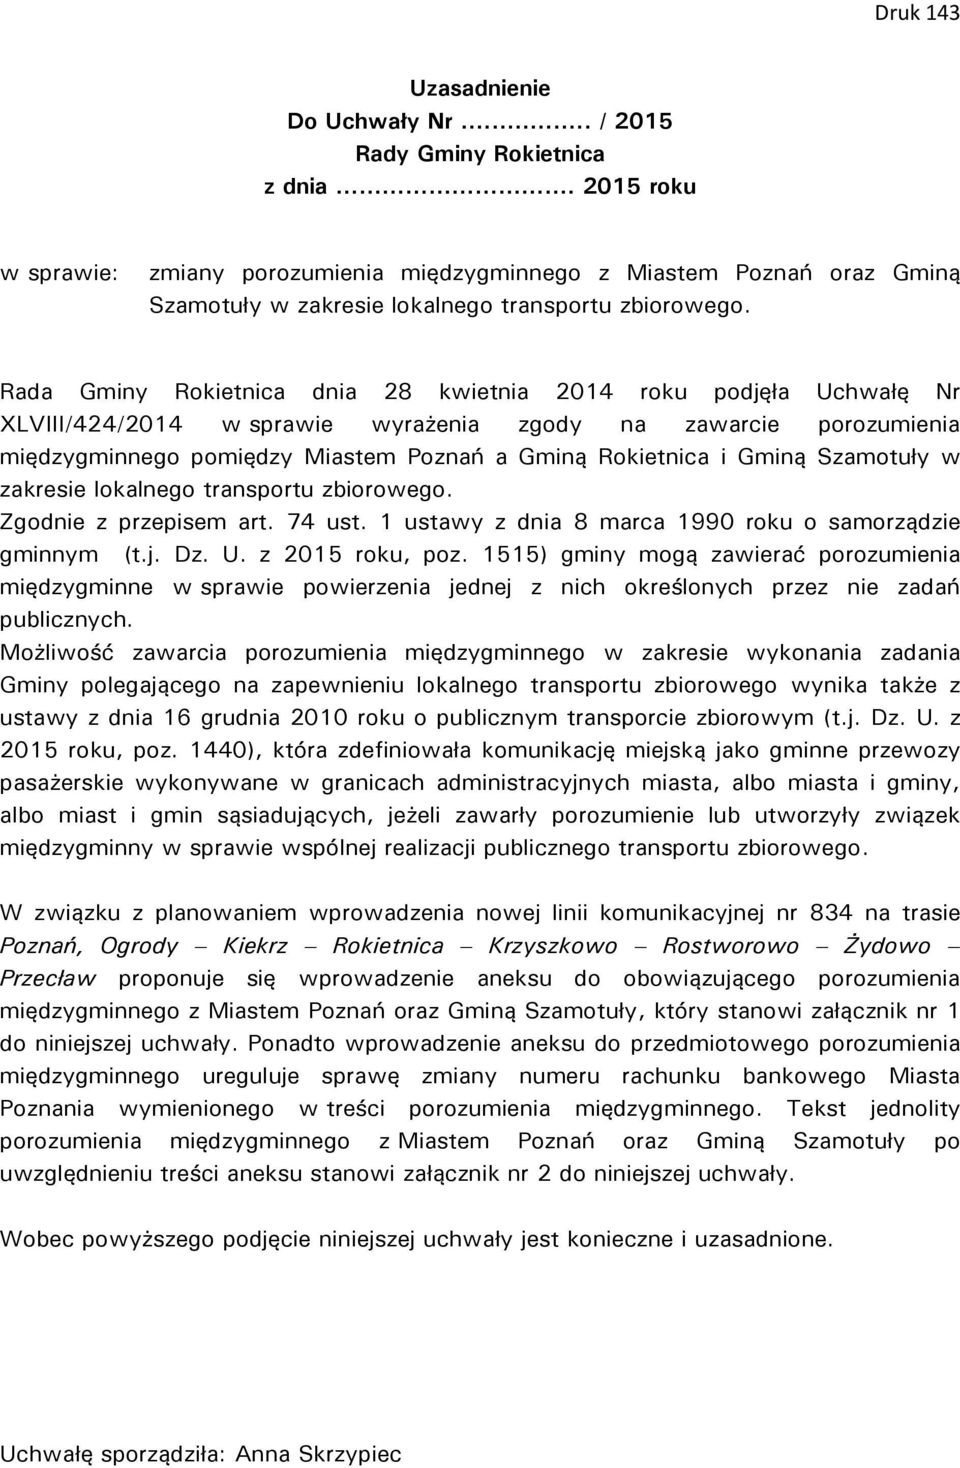 Rada Gminy Rokietnica dnia 28 kwietnia 2014 roku podjęła Uchwałę Nr XLVIII/424/2014 w sprawie wyrażenia zgody na zawarcie porozumienia międzygminnego pomiędzy Miastem Poznań a Gminą Rokietnica i